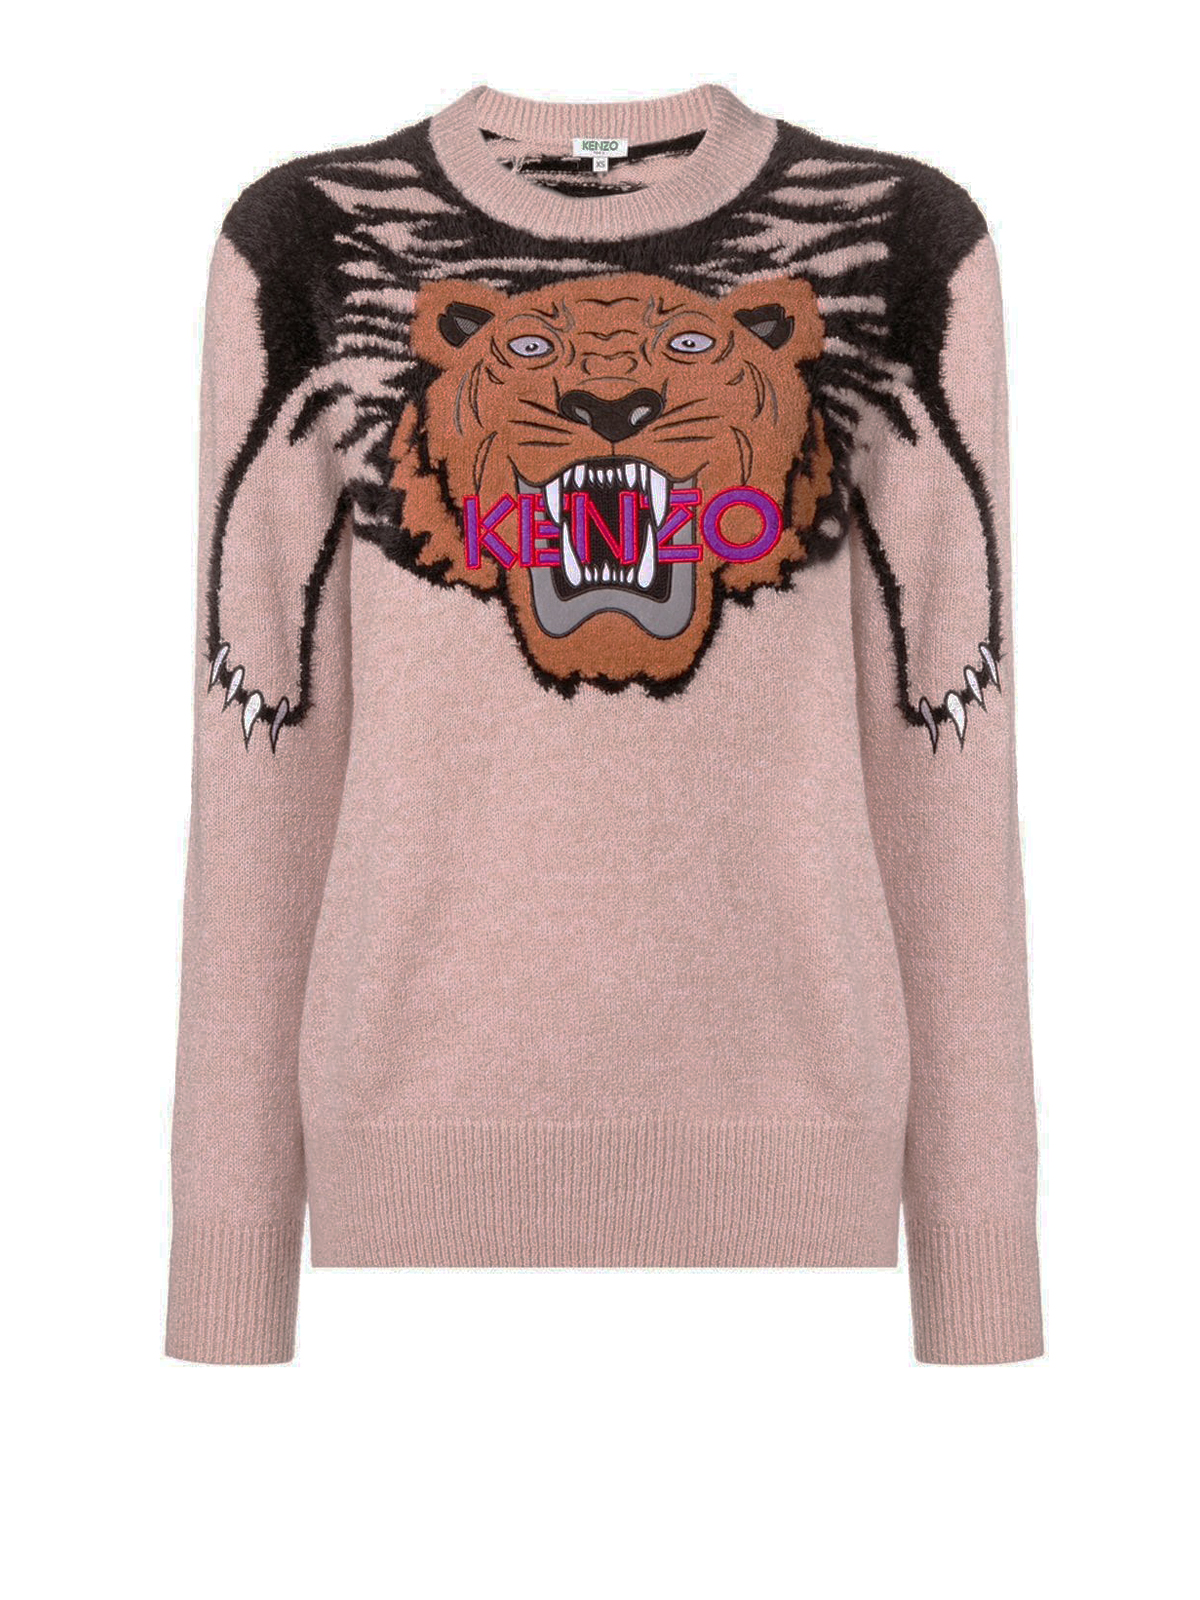 Kenzo Tiger Intarsia Sweater In Grey